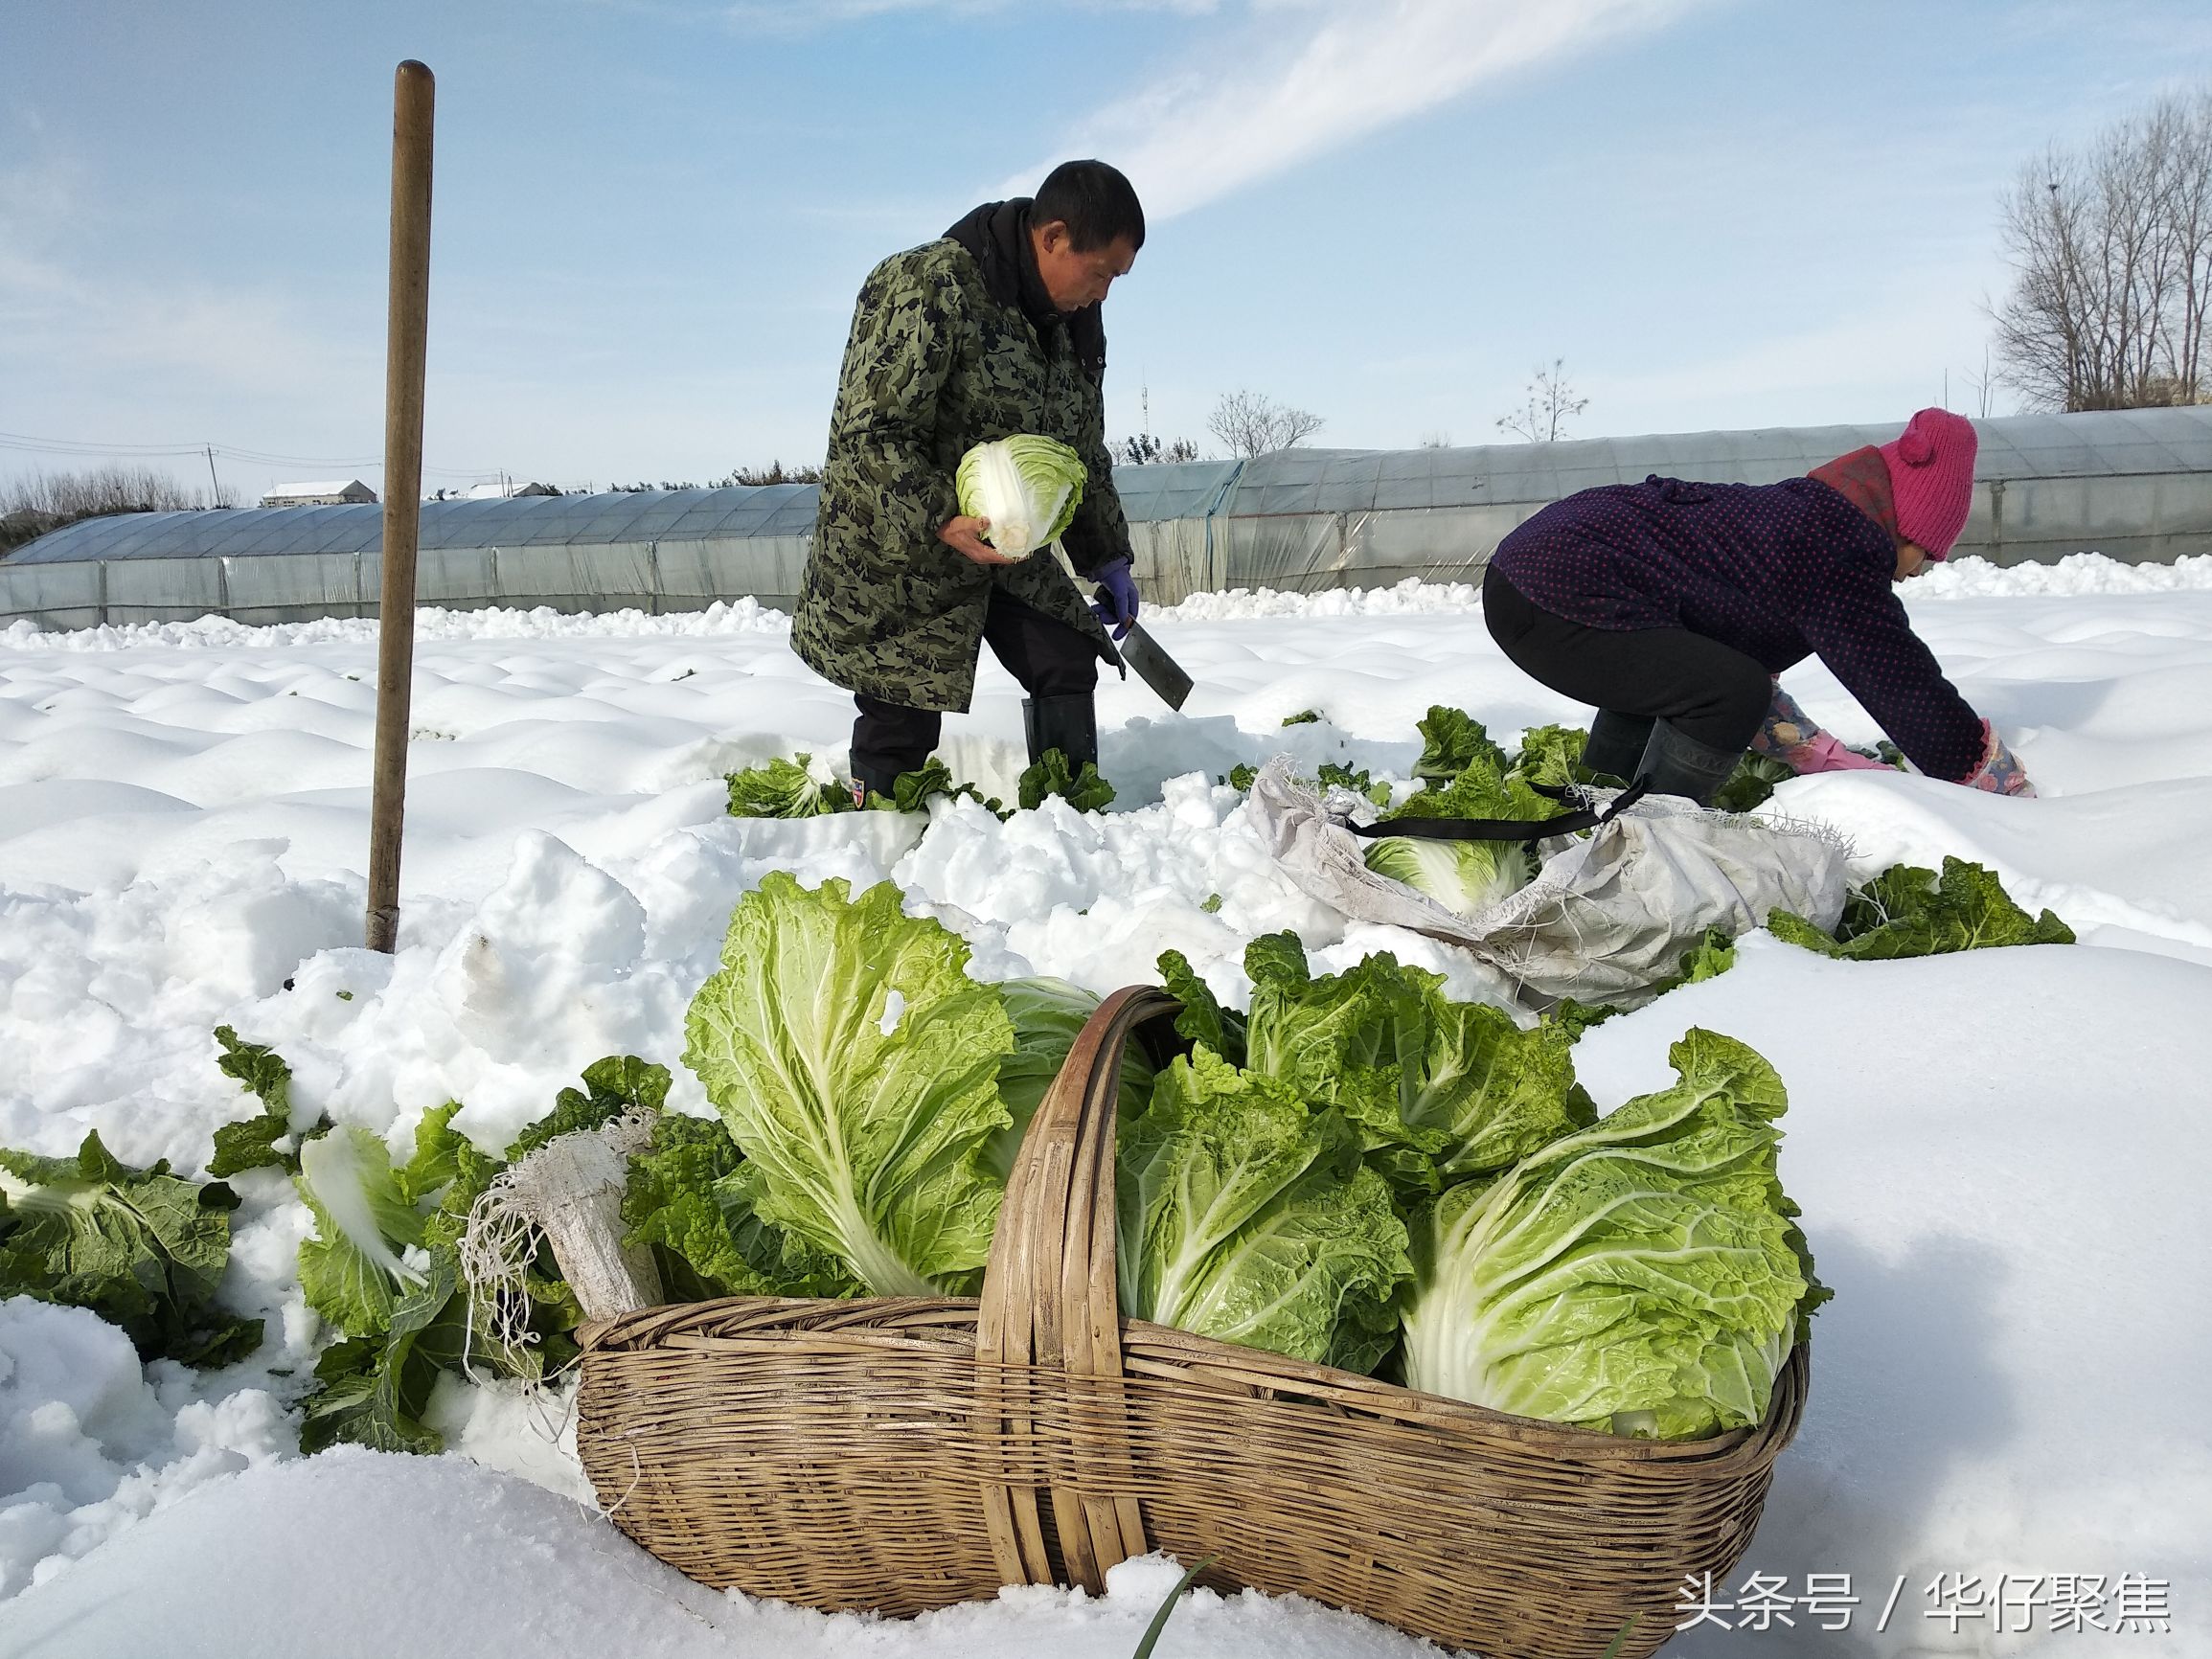 菜农雪地里刨白菜冰雪天蔬菜价格上涨天气是主要影响因素